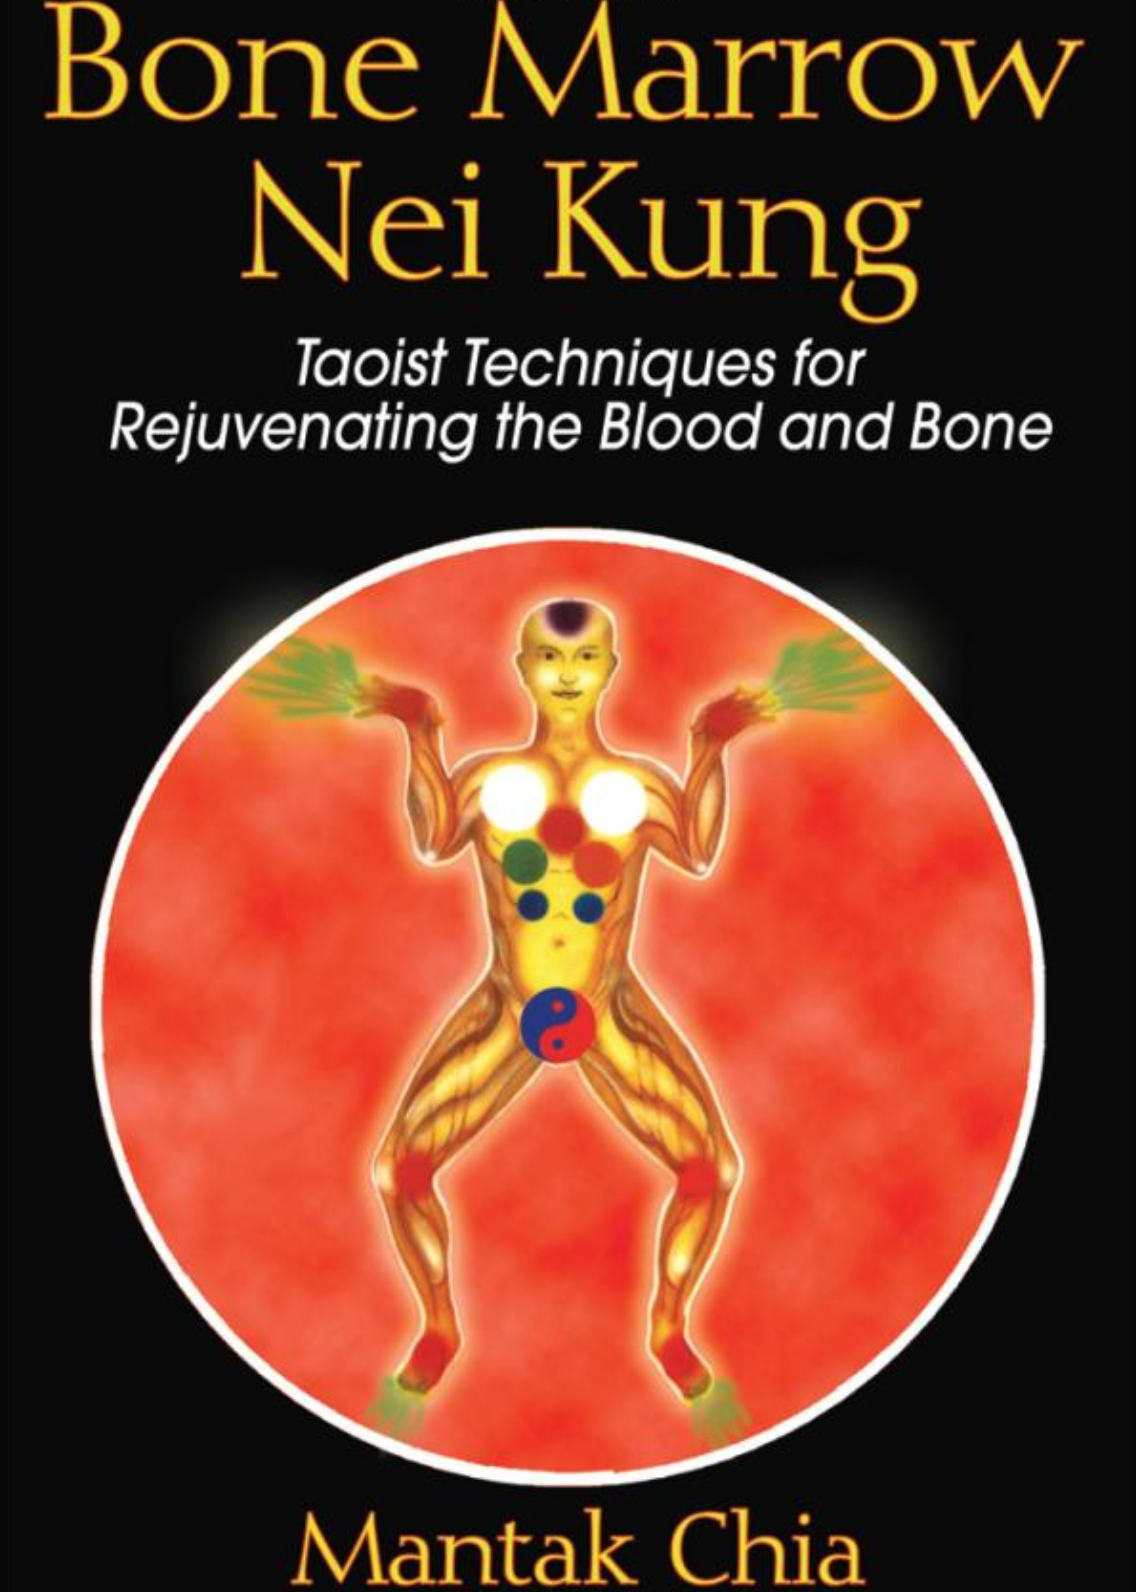 Bone Marrow Nei Kung: Técnicas taoístas para rejuvenecer el libro de sangre y huesos de Mantak Chia (usado) 